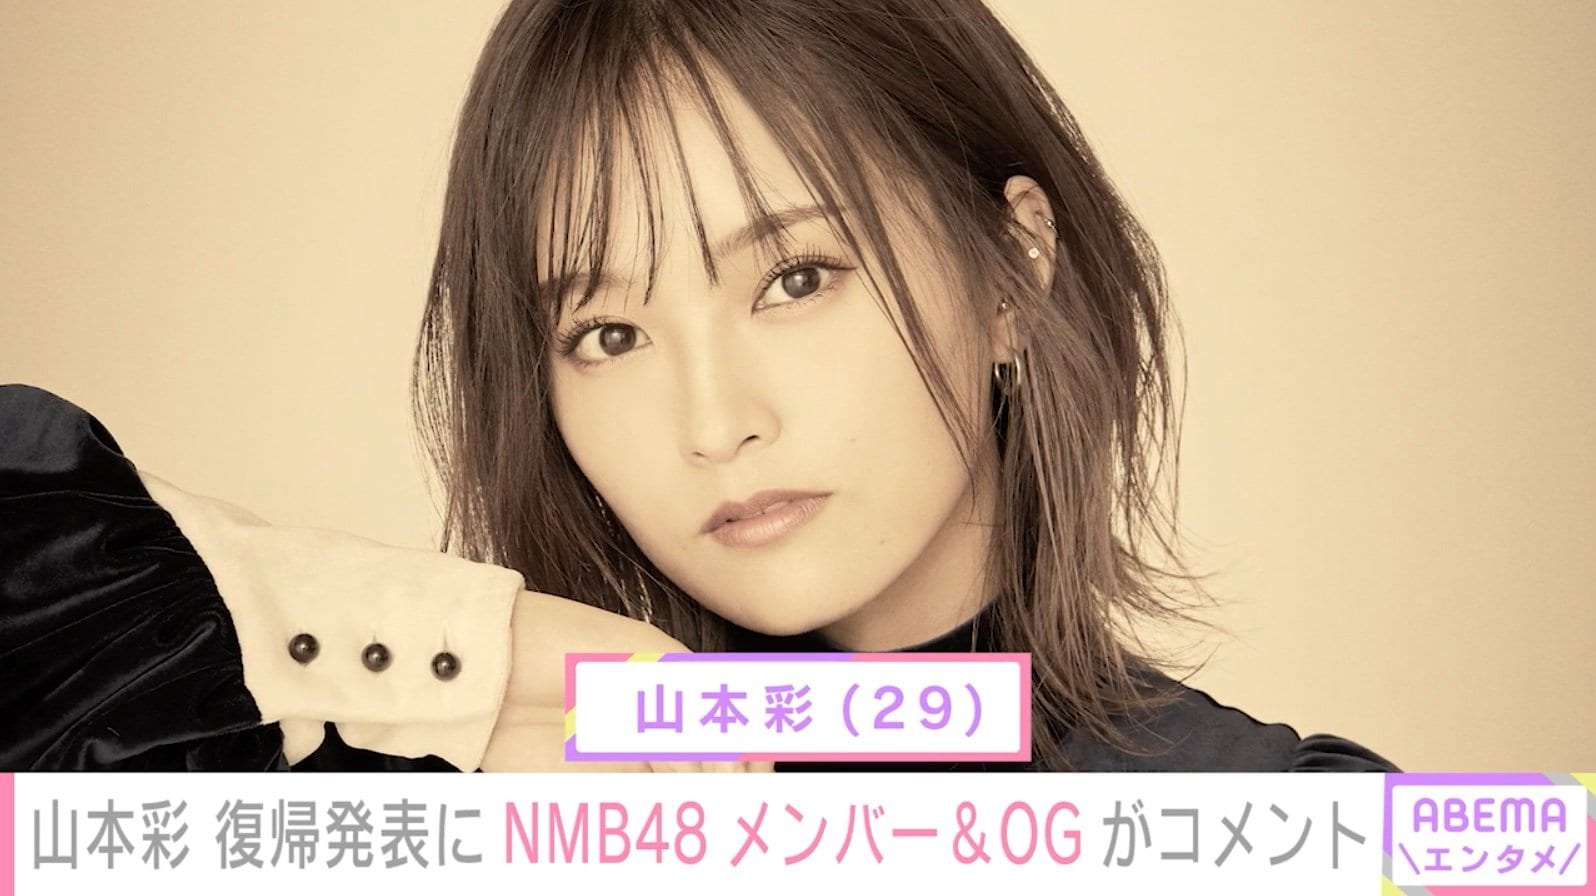 山本彩の復帰発表にNMB48メンバー＆OGからコメント殺到「おかえり」「おめでとう」 | エンタメ総合 | ABEMA TIMES | アベマタイムズ